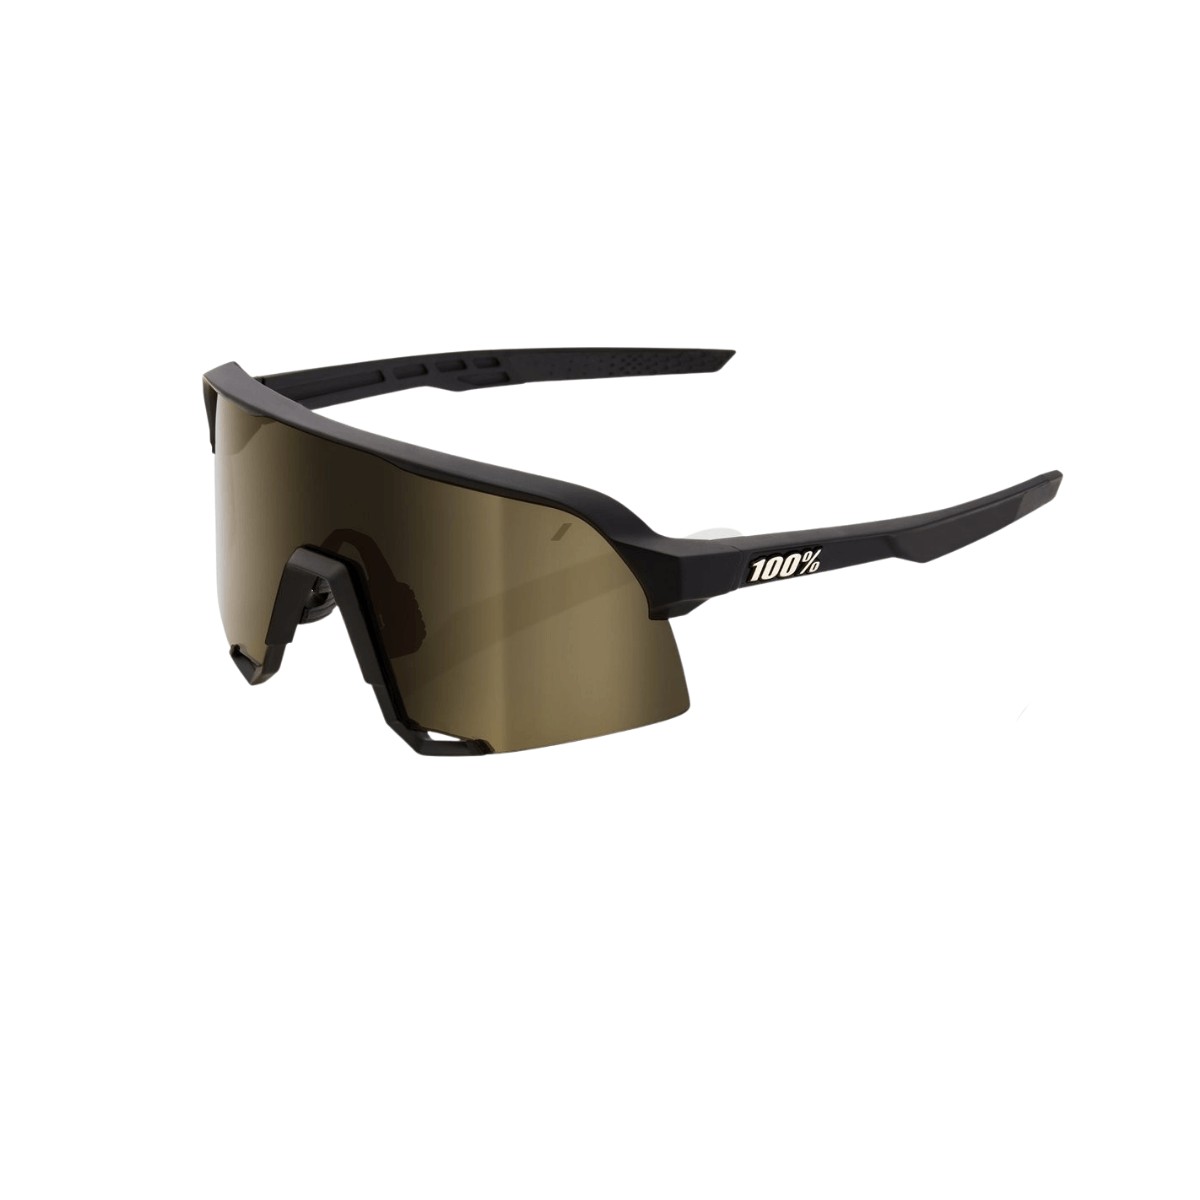 100% S3 Mattschwarze Brille - Weiche Goldspiegellinse (Soft Tact Black - Weiche Goldlinse)